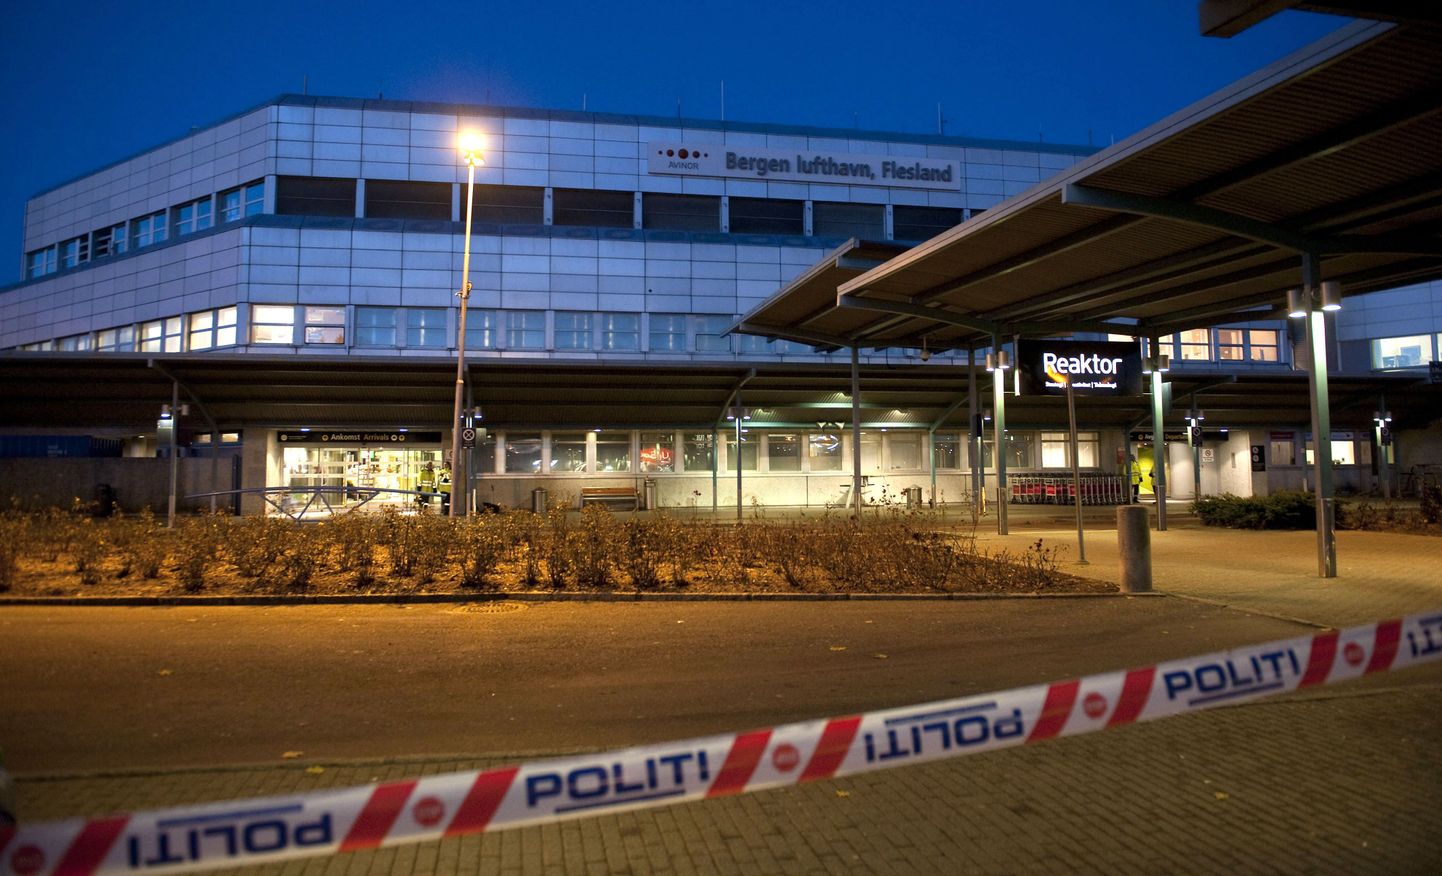 Bergeni lennujaam - foto on tehtud paari aasta taguse pommikahtluse ajal.